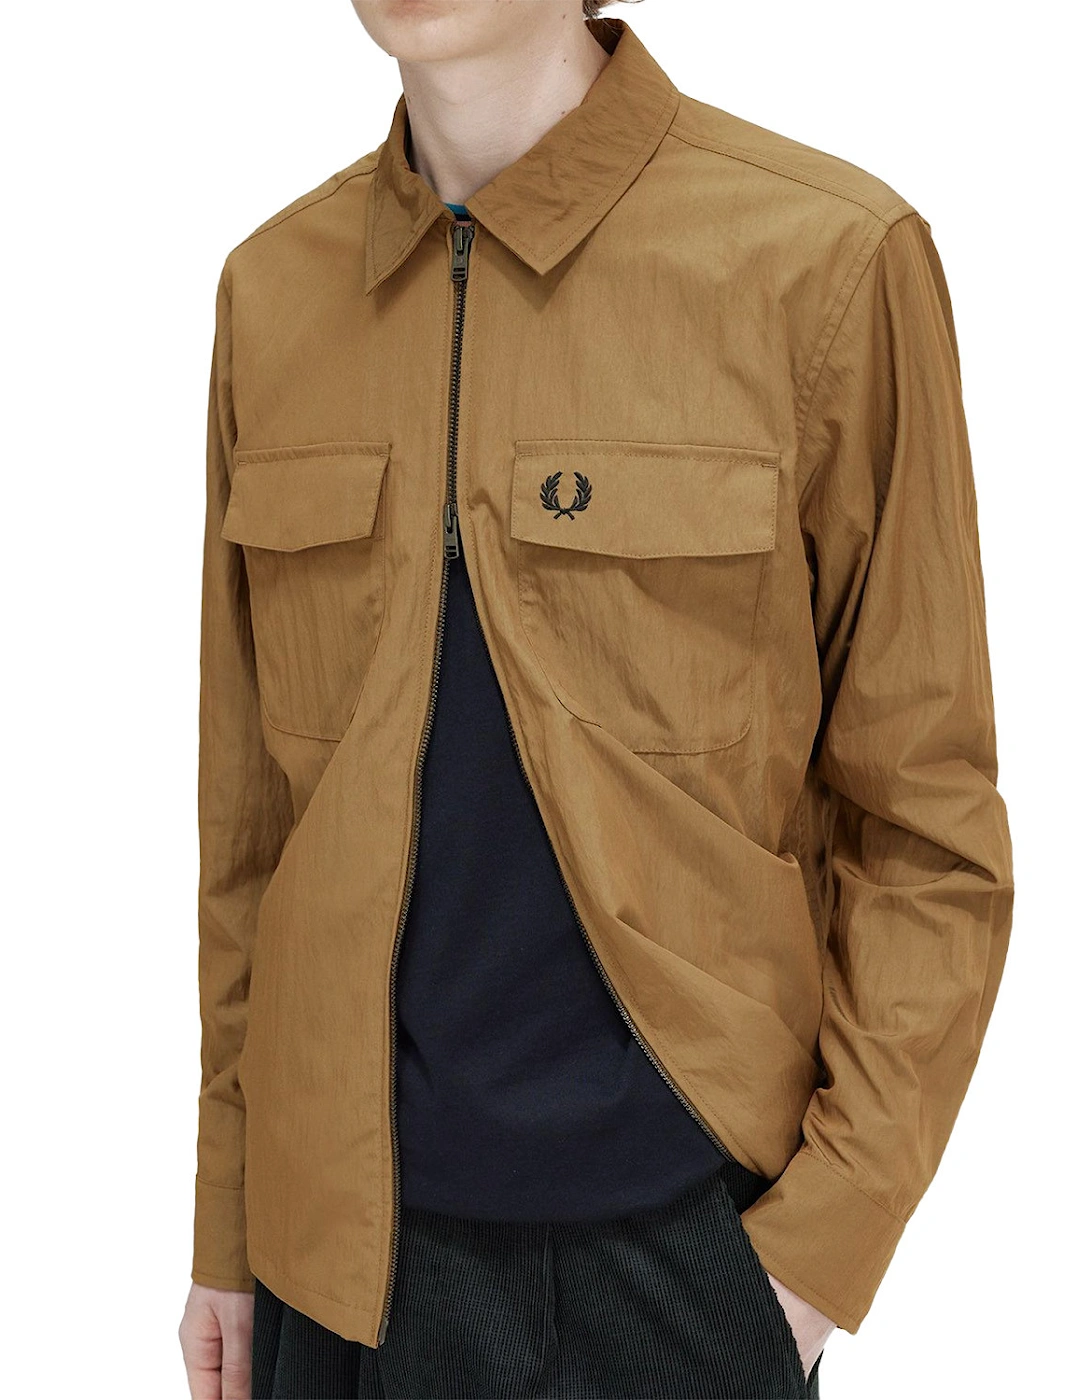 Mens Full Zip Overshirt (Brown)